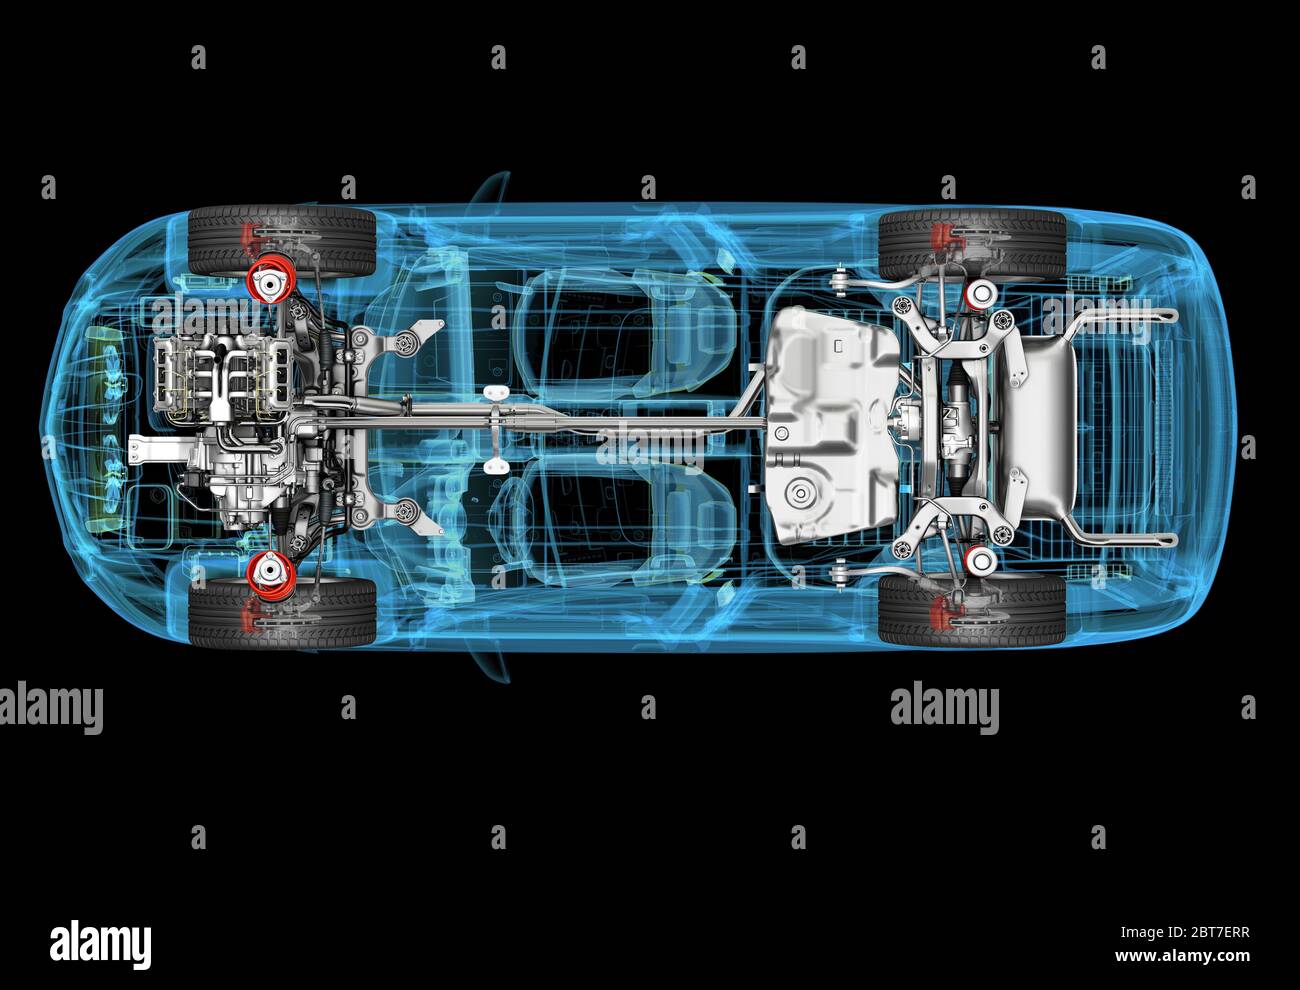 Technische 3d-Darstellung von SUV-Auto mit Röntgeneffekt und Antriebsstrang-System. Draufsicht auf schwarzem Hintergrund. Stockfoto